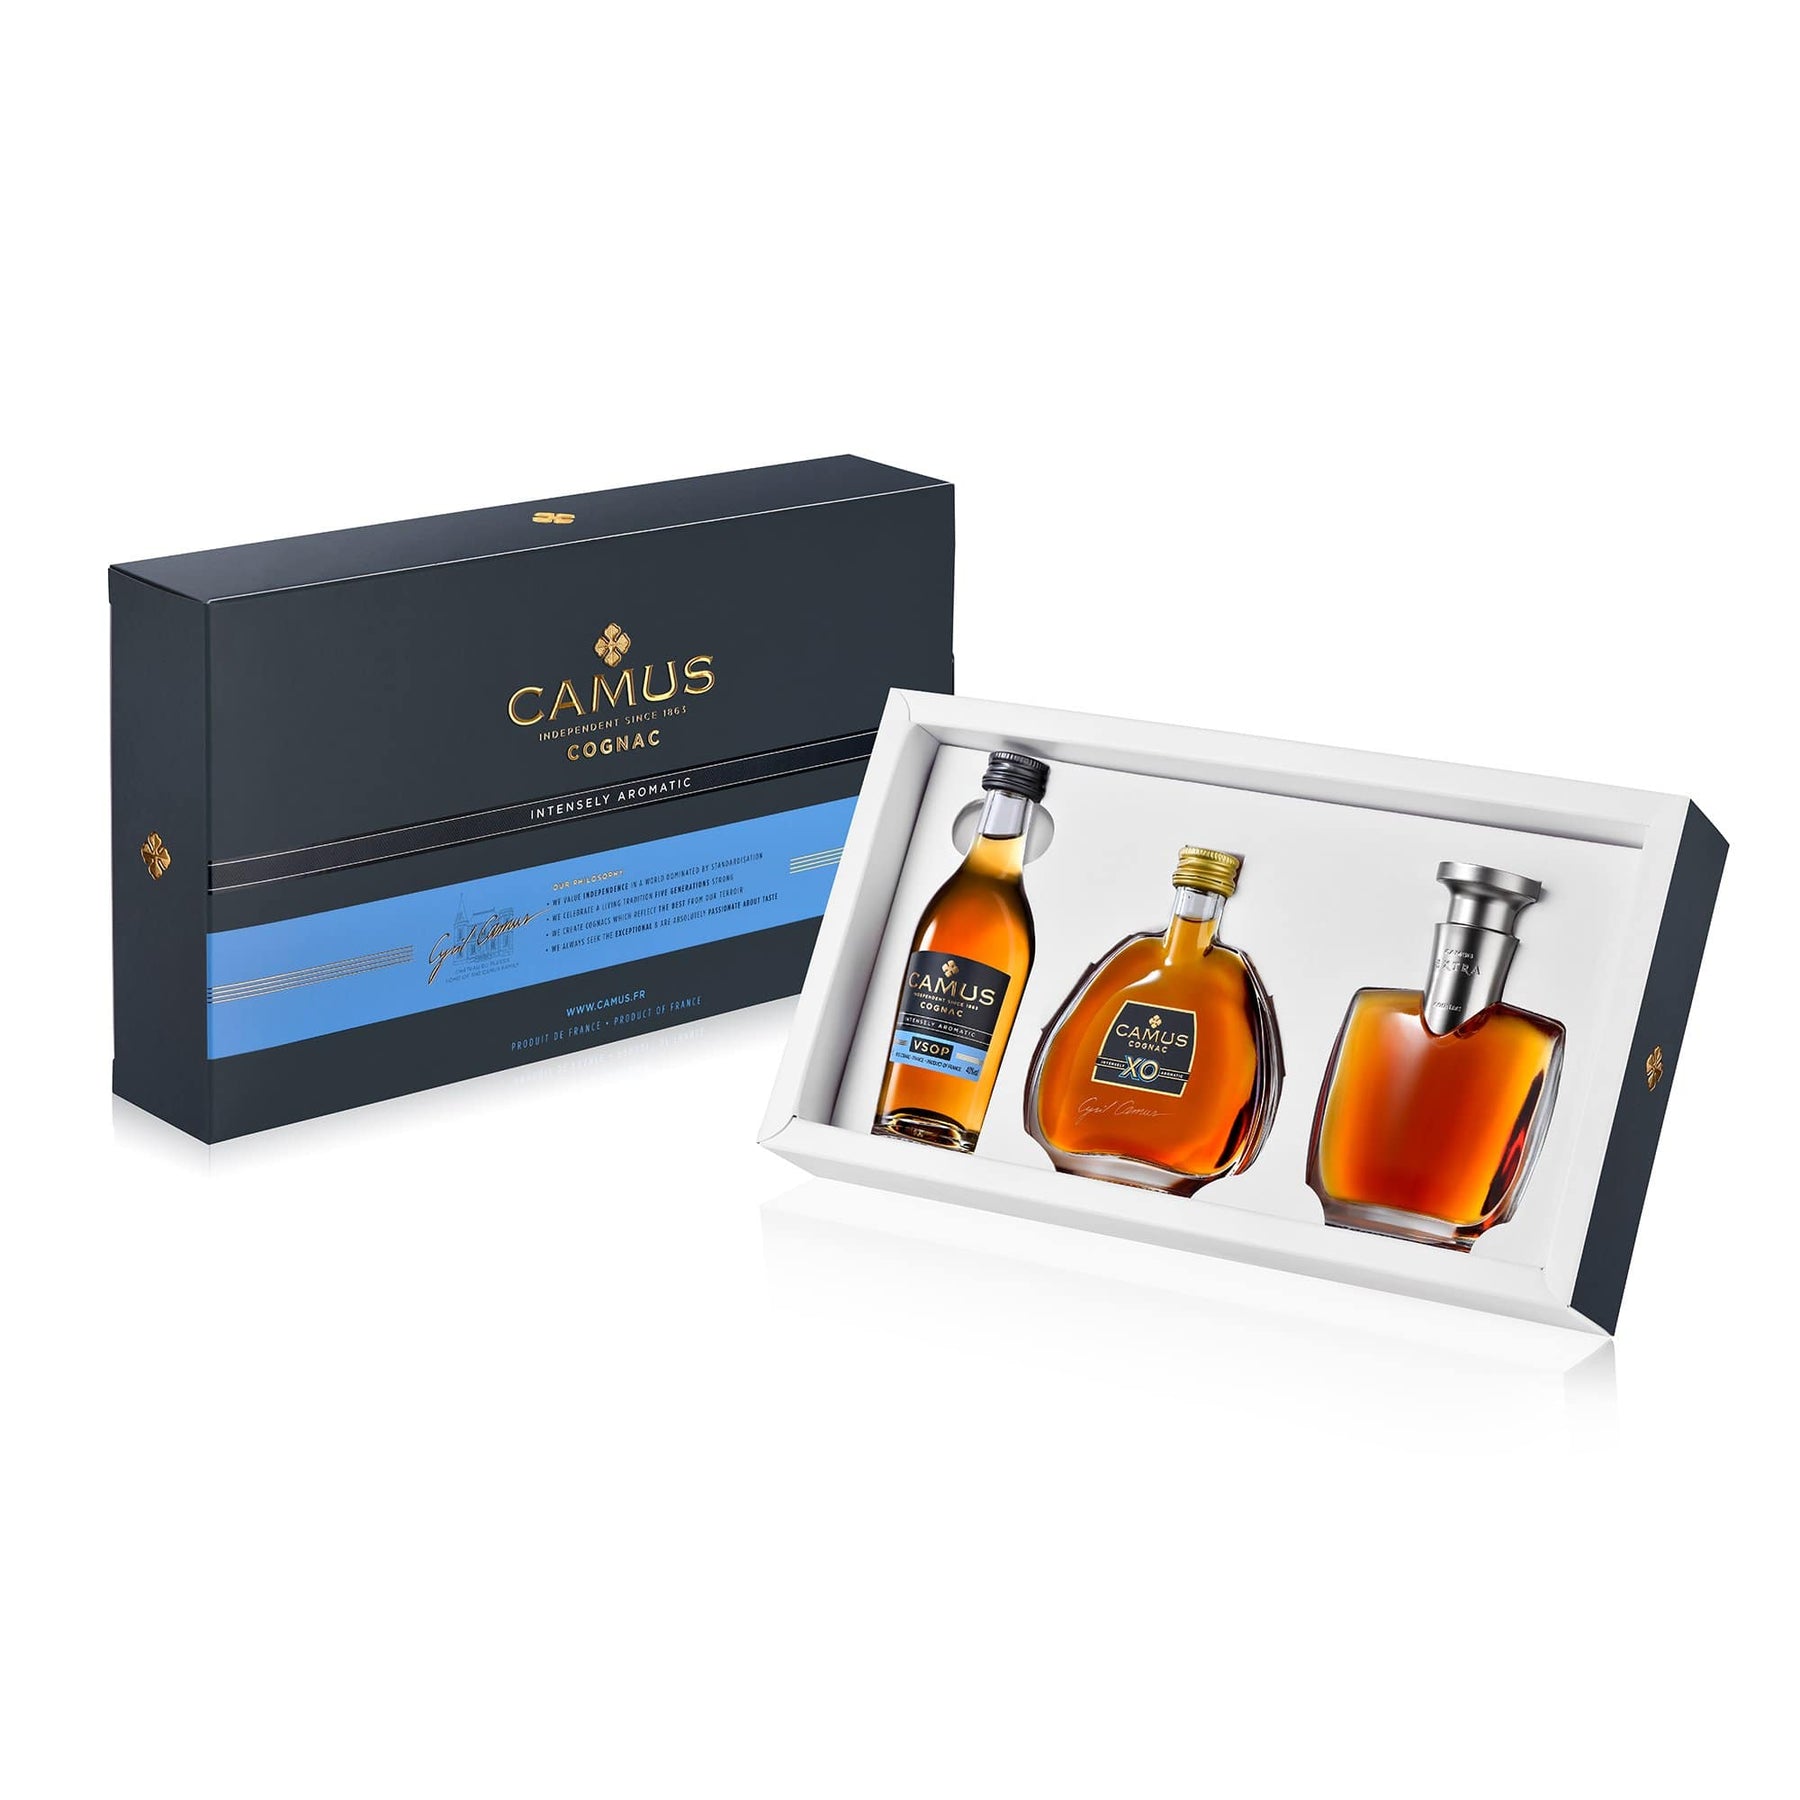 Set of cocktails and boxes – Château de Cognac